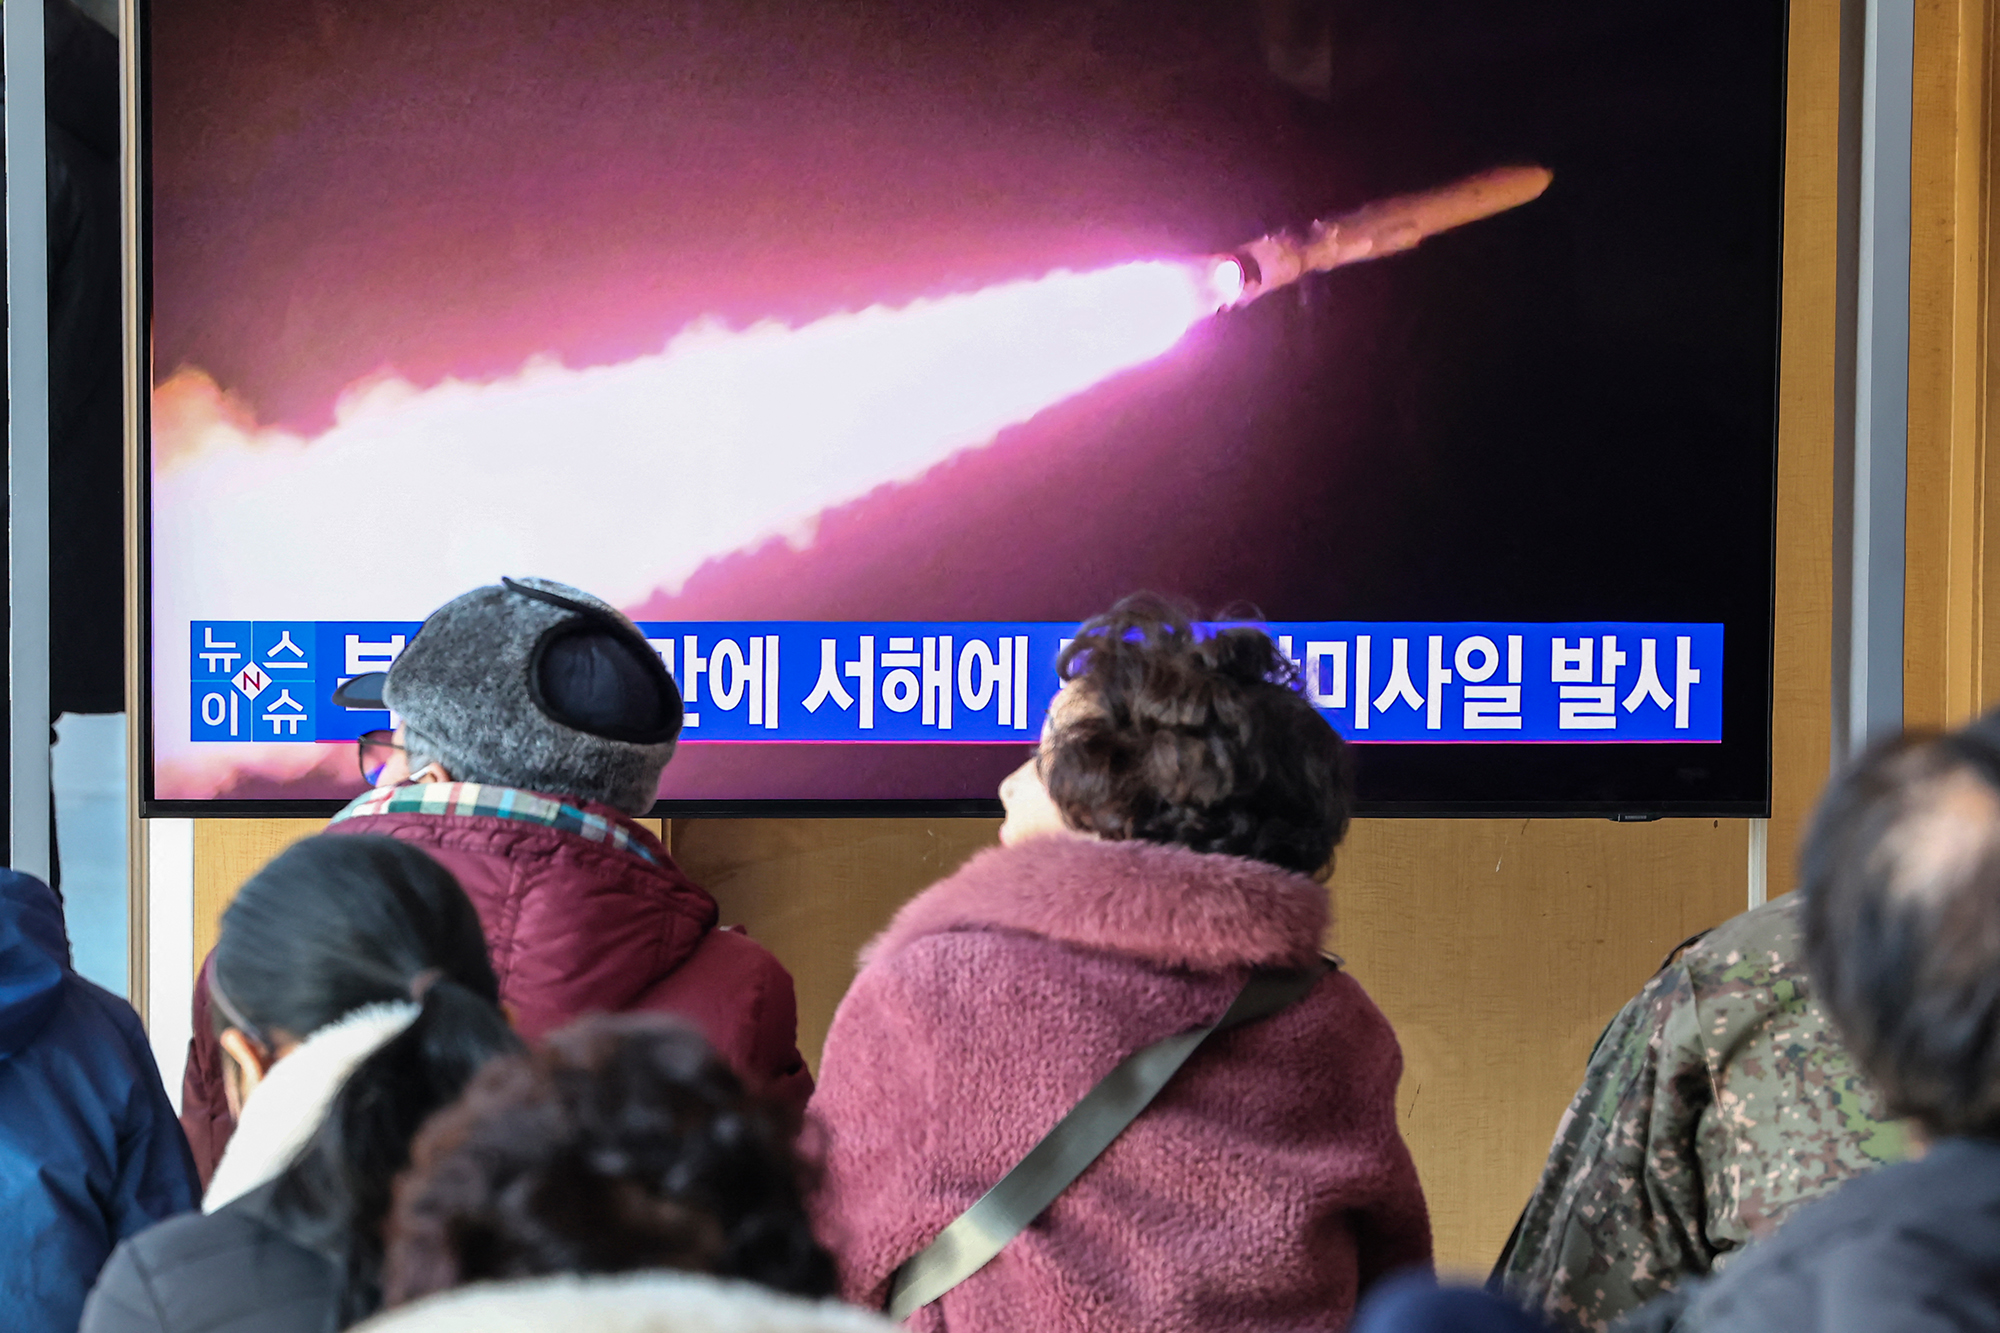 Passanten sehen auf einem Bildschirm in einem Bahnhof in Südkoreas Hauptstadt Seoul einen Bericht über einen erneuten nordkoreanischen Raketentest (Bild: Yonhap/AFP)